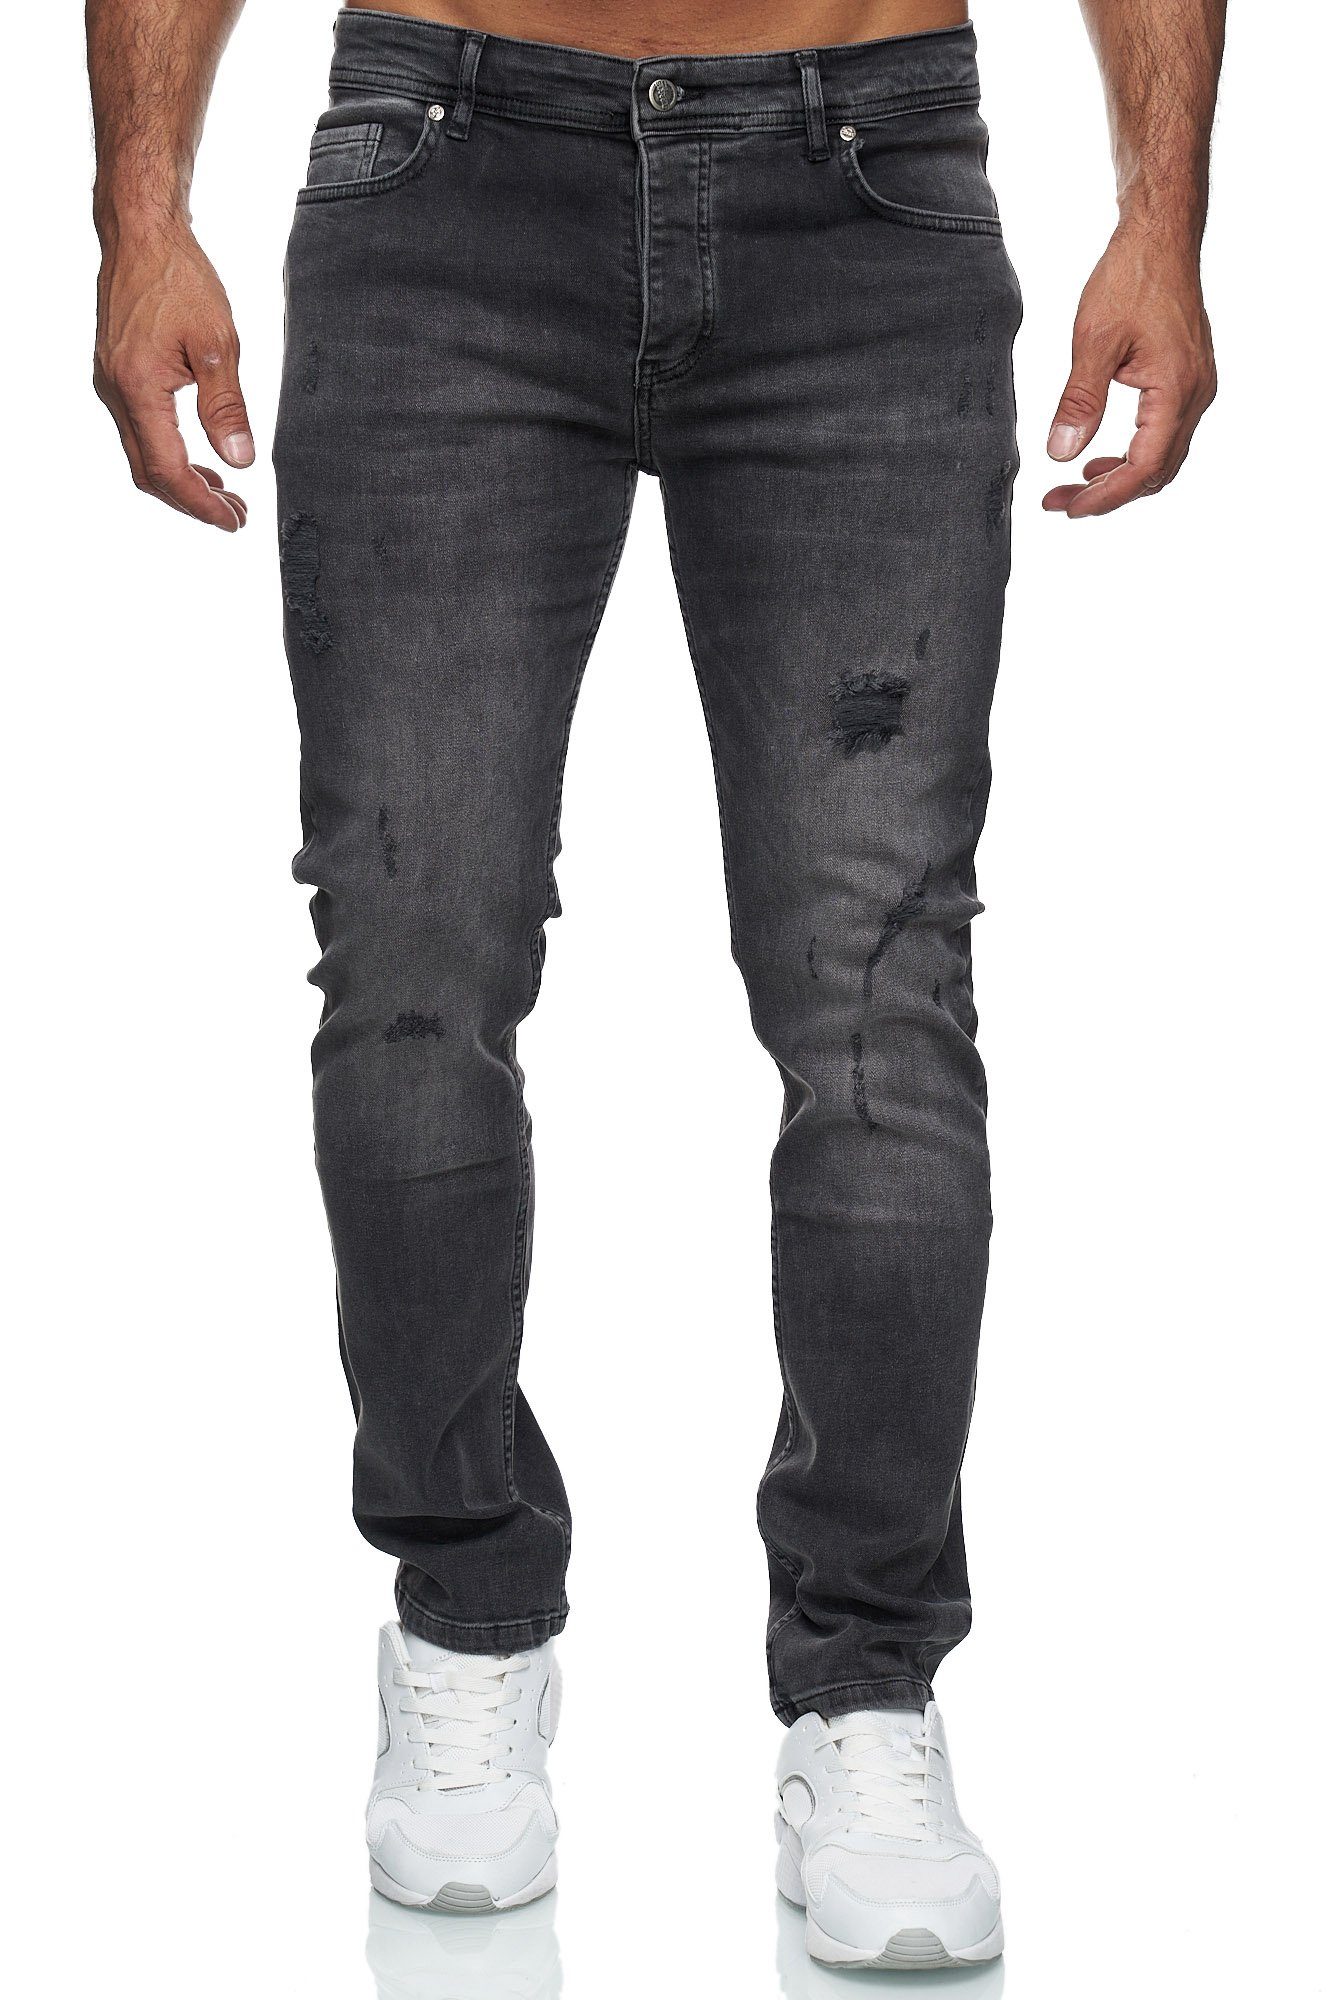 Reslad Destroyed-Jeans Reslad Jeans Herren Destroyed Slim Fit Herren-Hose  Jeanshose Männer Destroyed Look Stretch Slim Fit Jeans